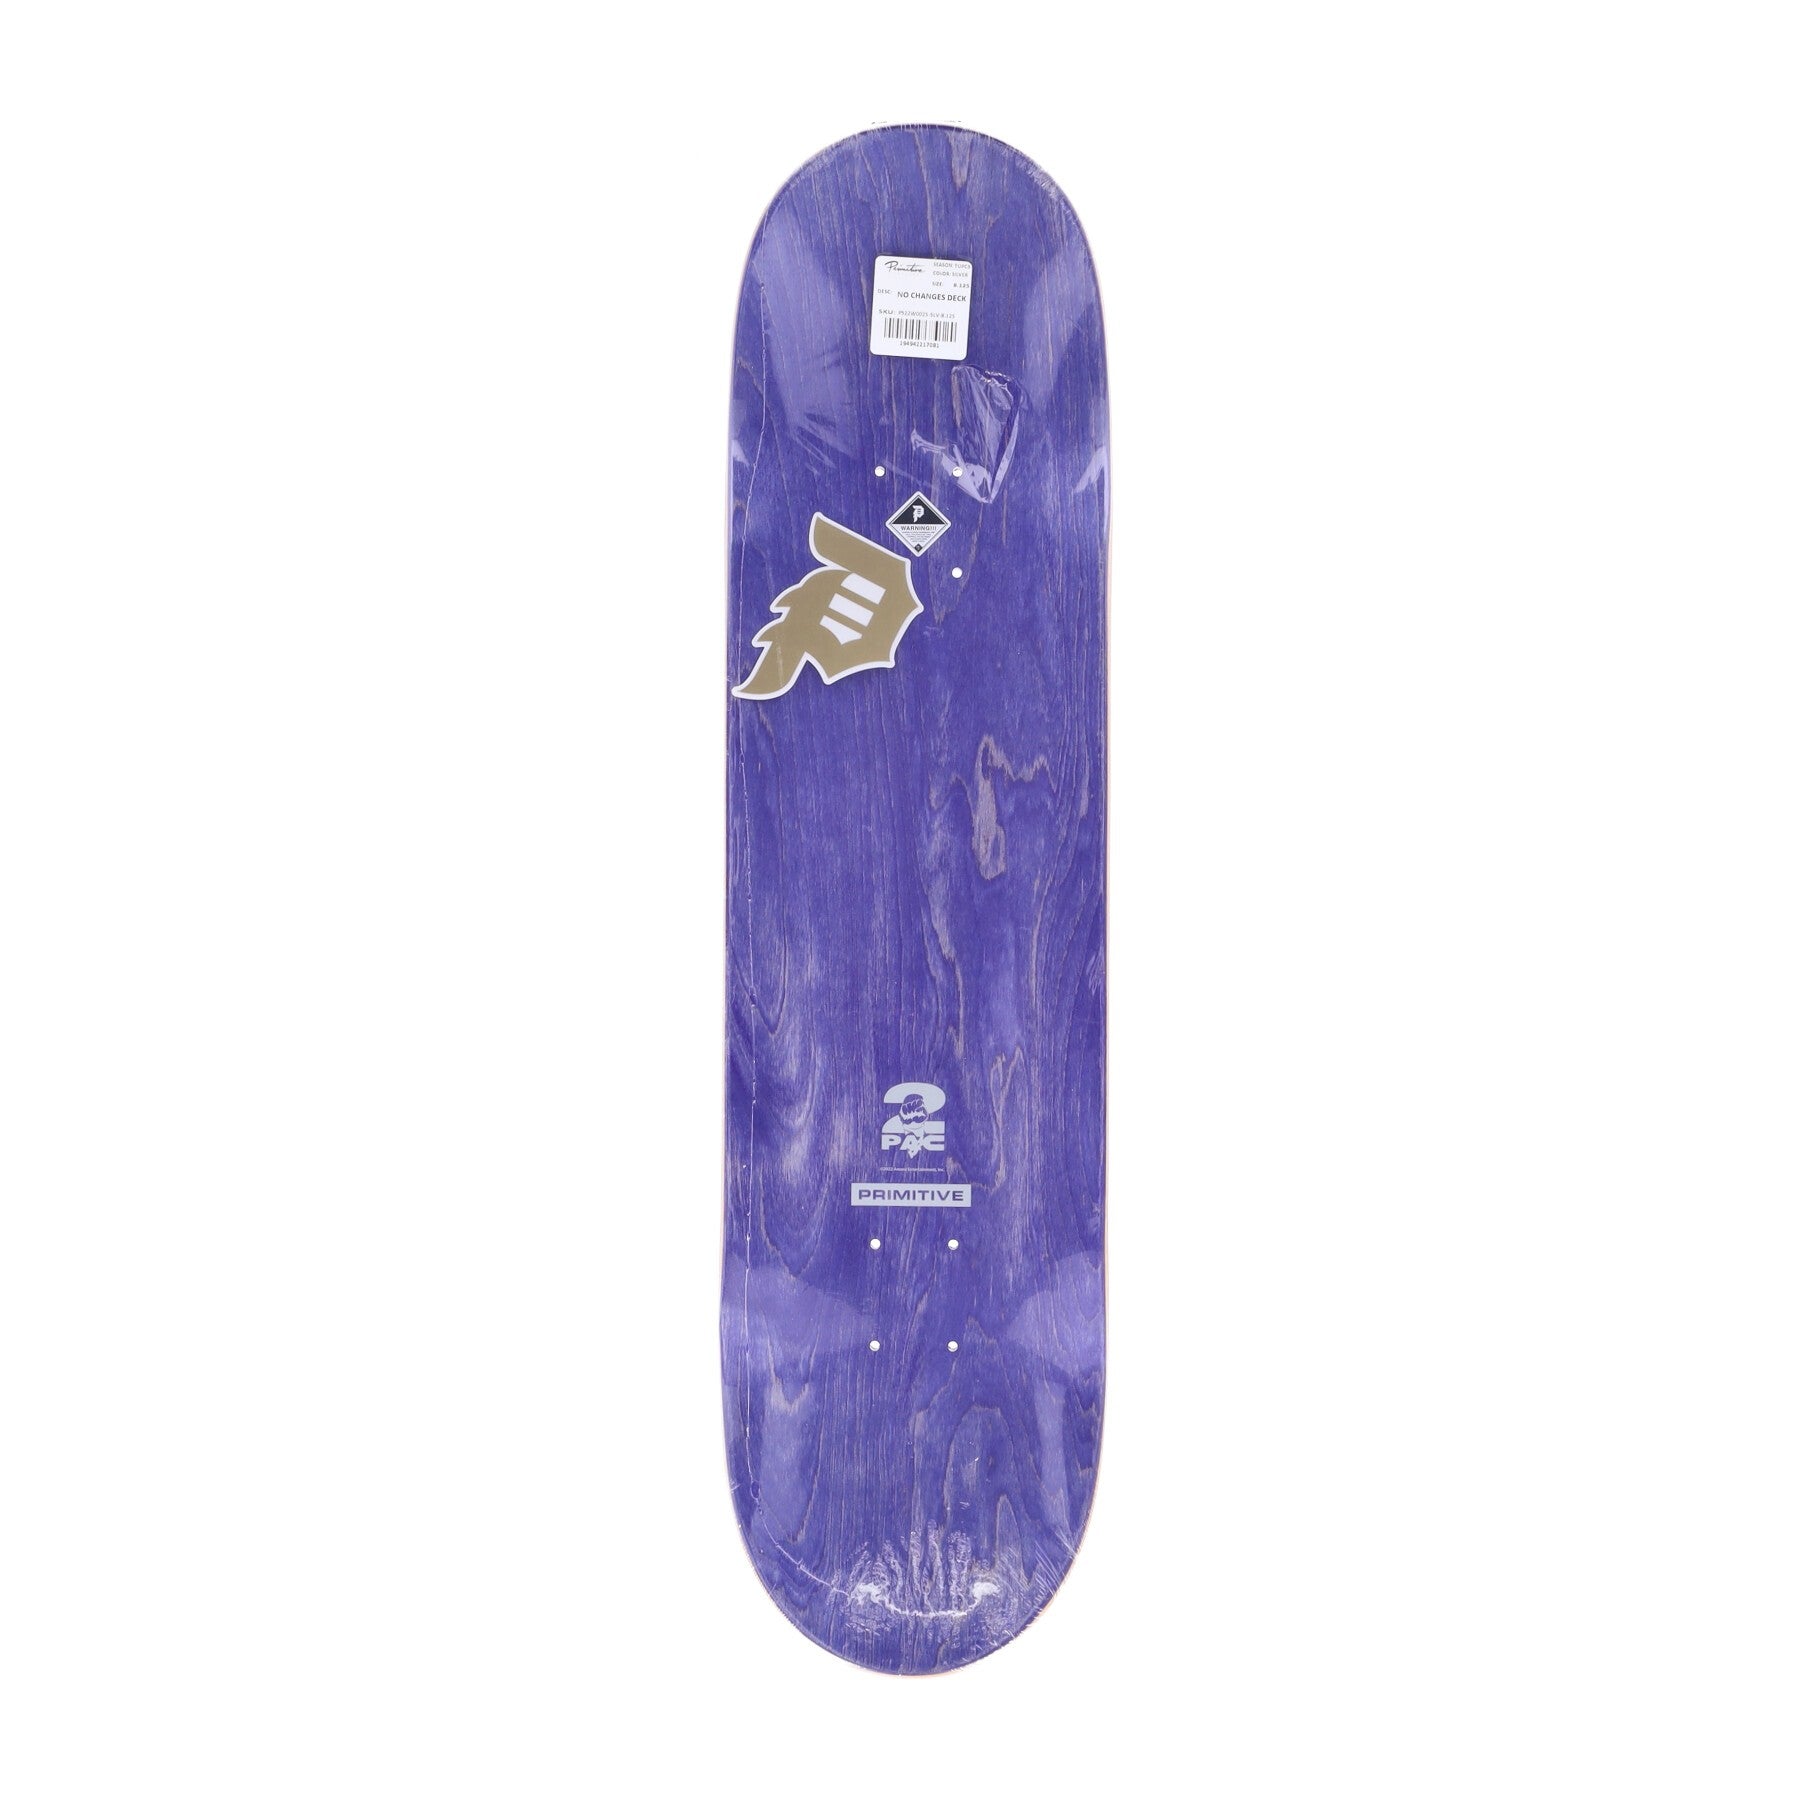 Primitive, Skateboard Tavola Uomo No Changes Deck X 2pac, Royal Blue